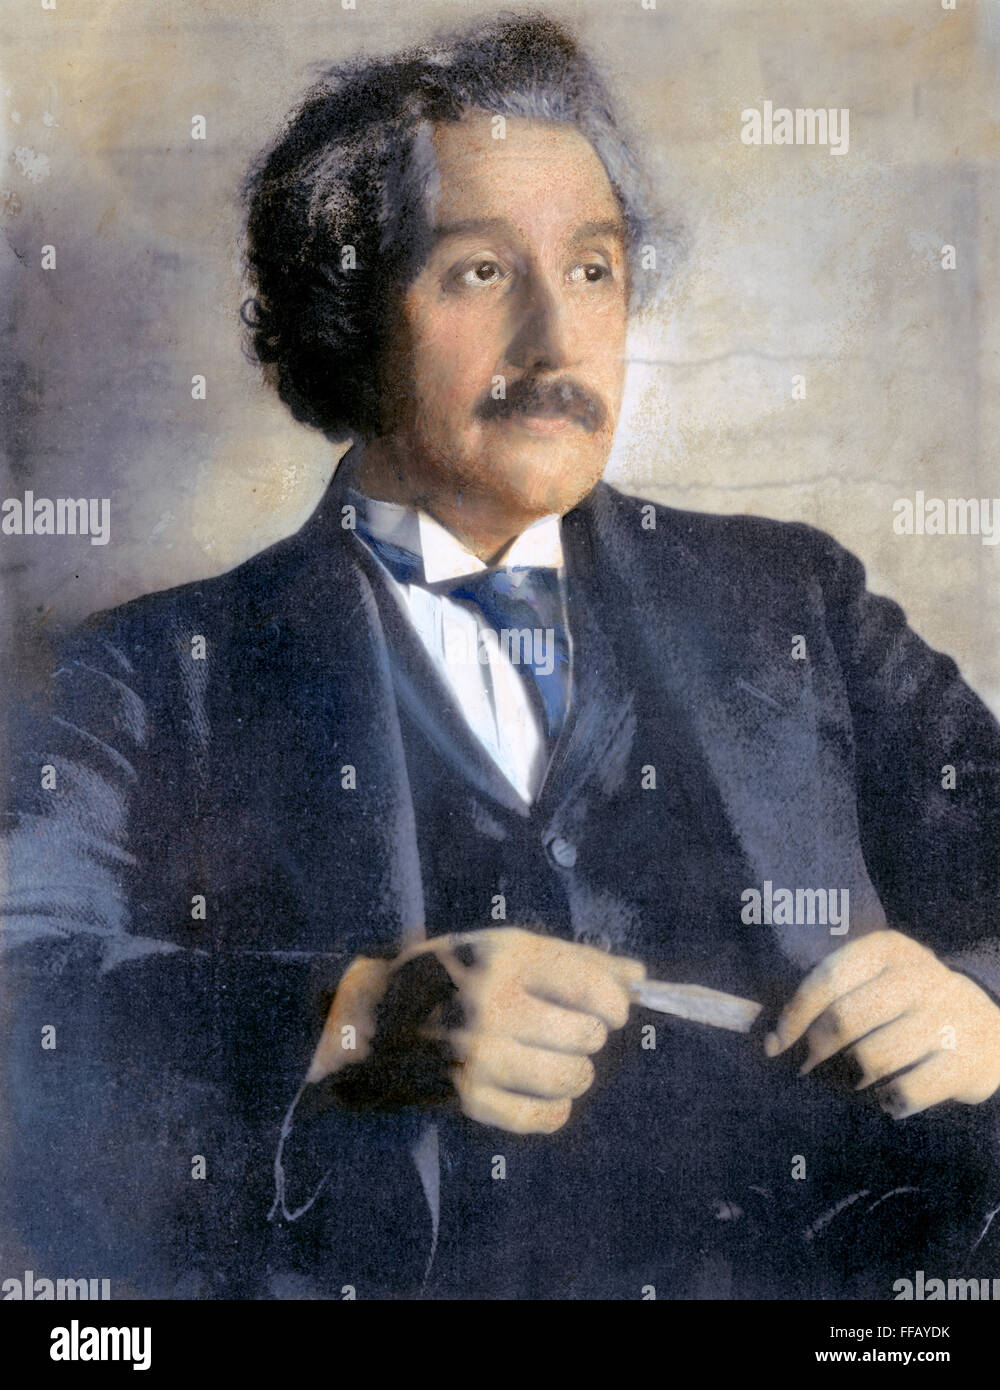 ALBERT EINSTEIN (1879-1955). /nAmerican (German-born) theoretical physicist. Oil over a photograph, 1921, by Ferdinand Schmutzer. Stock Photo